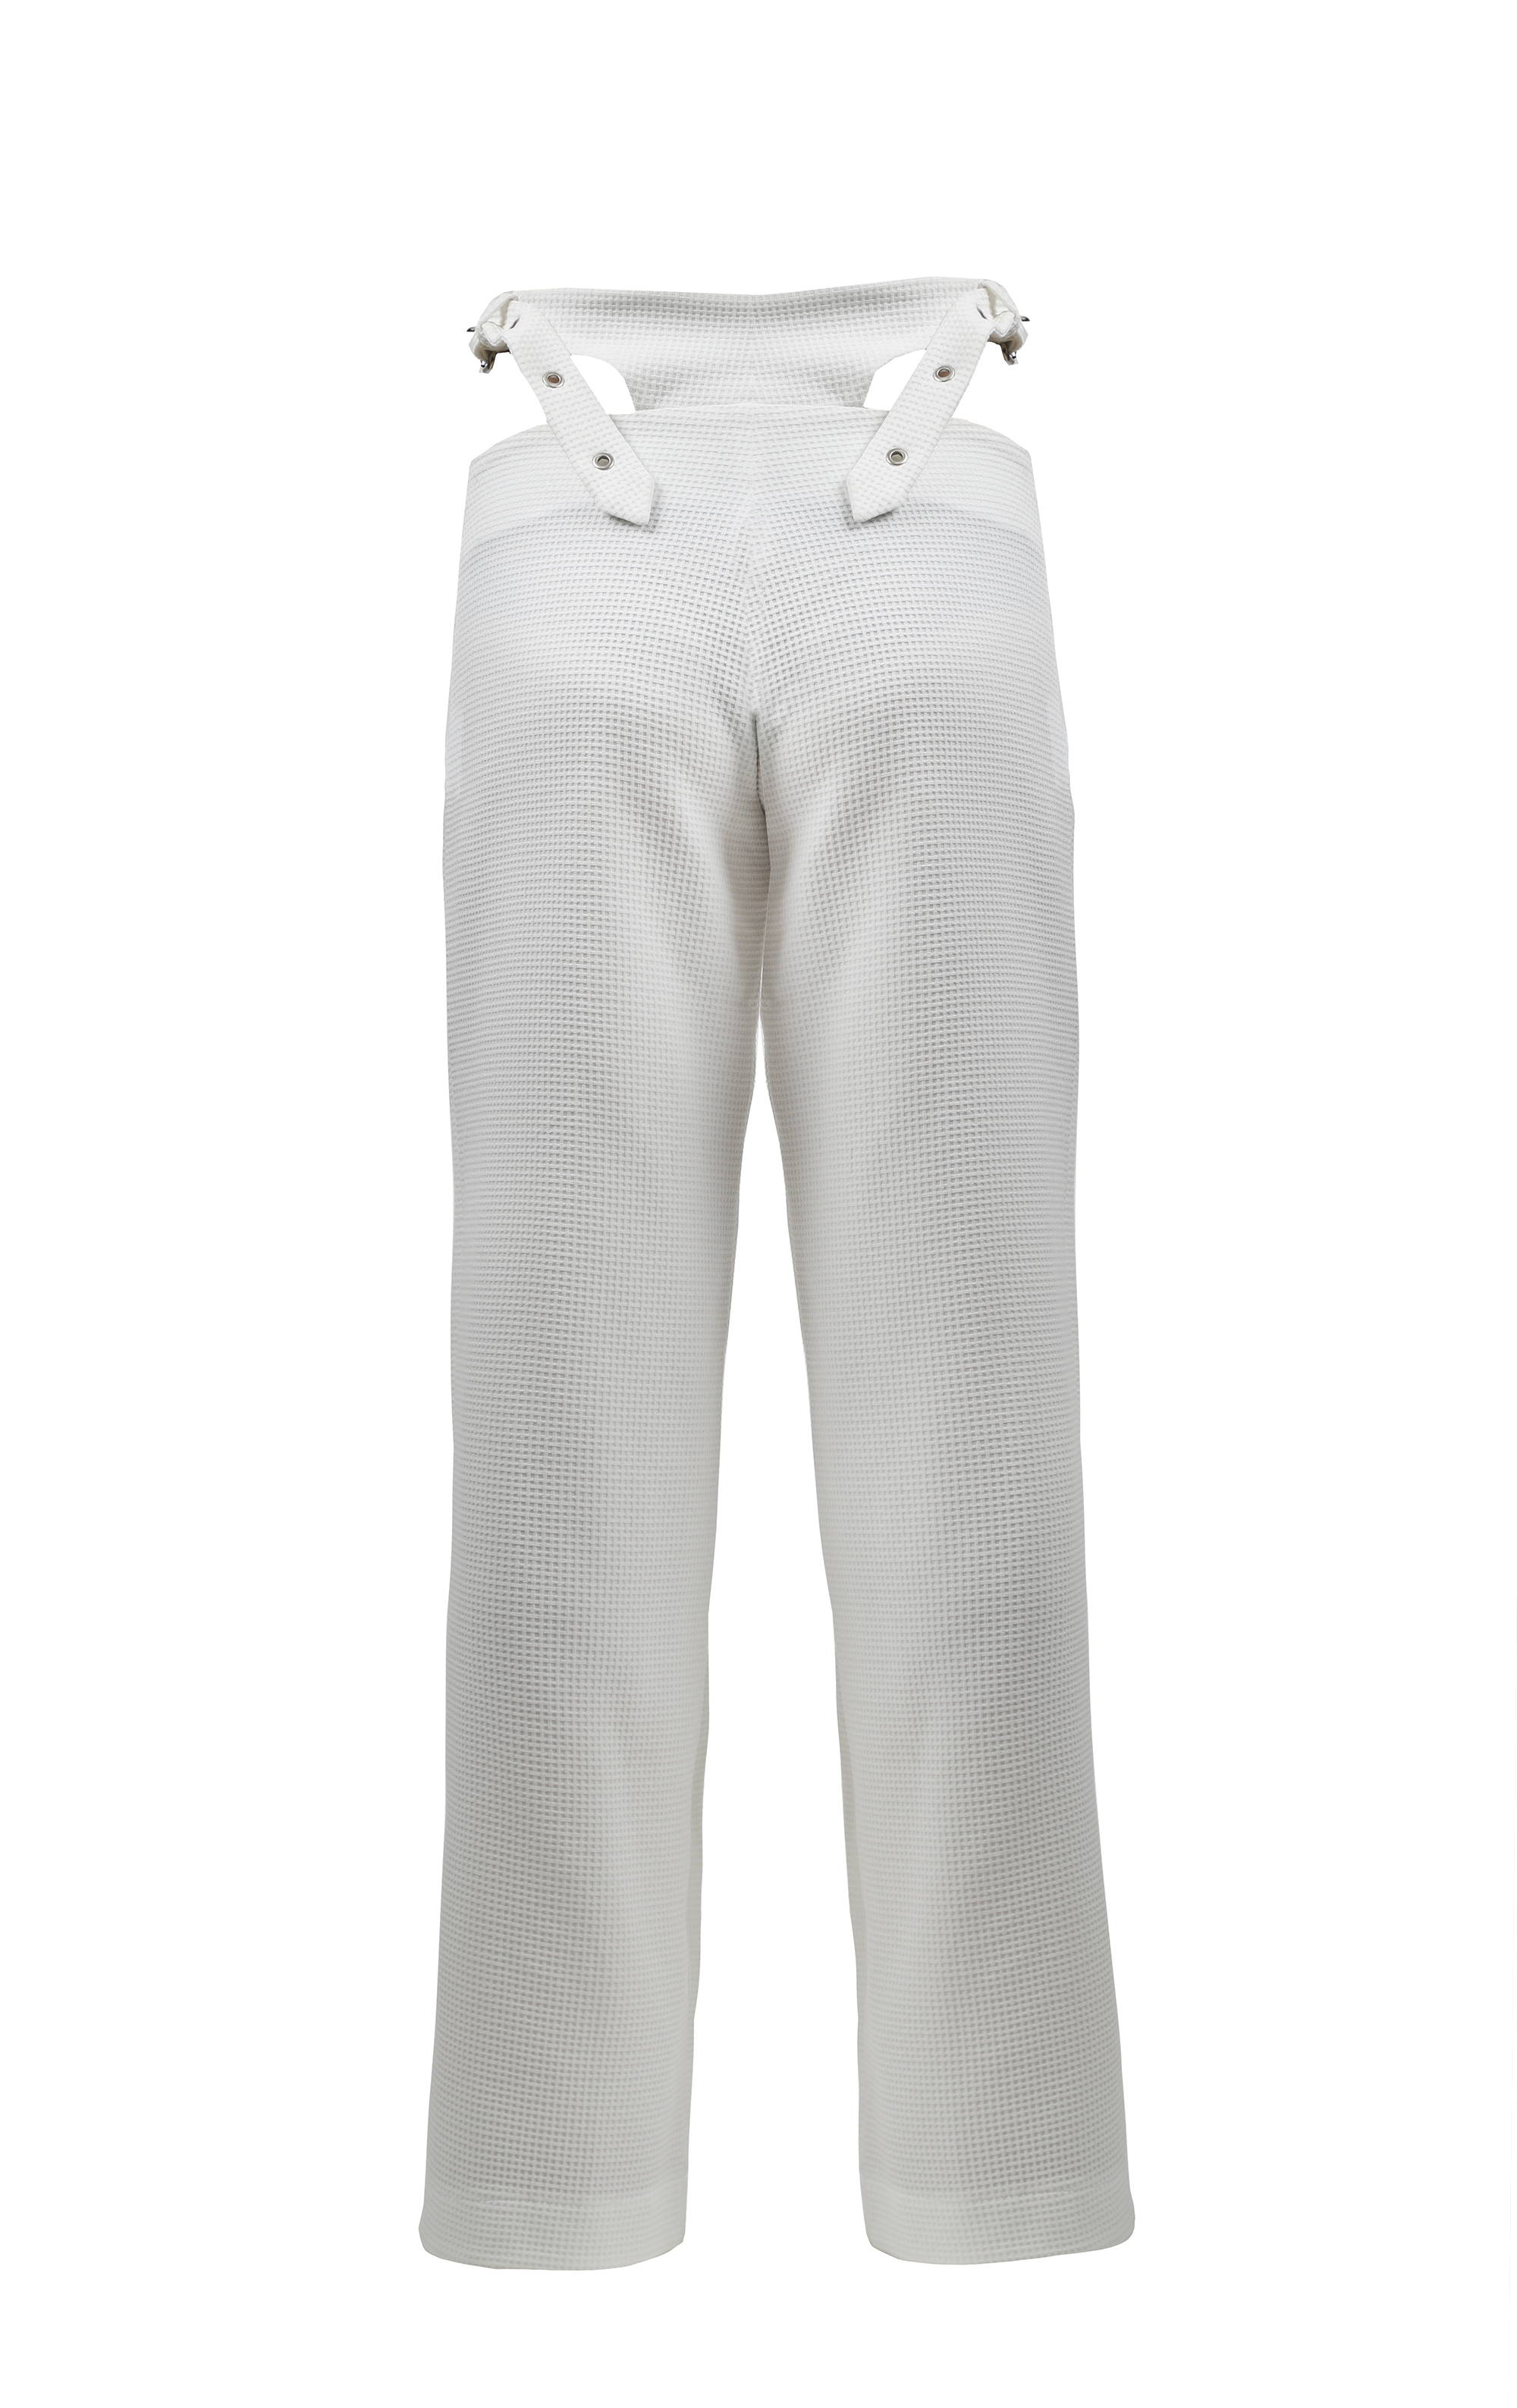 Low-rise white pants